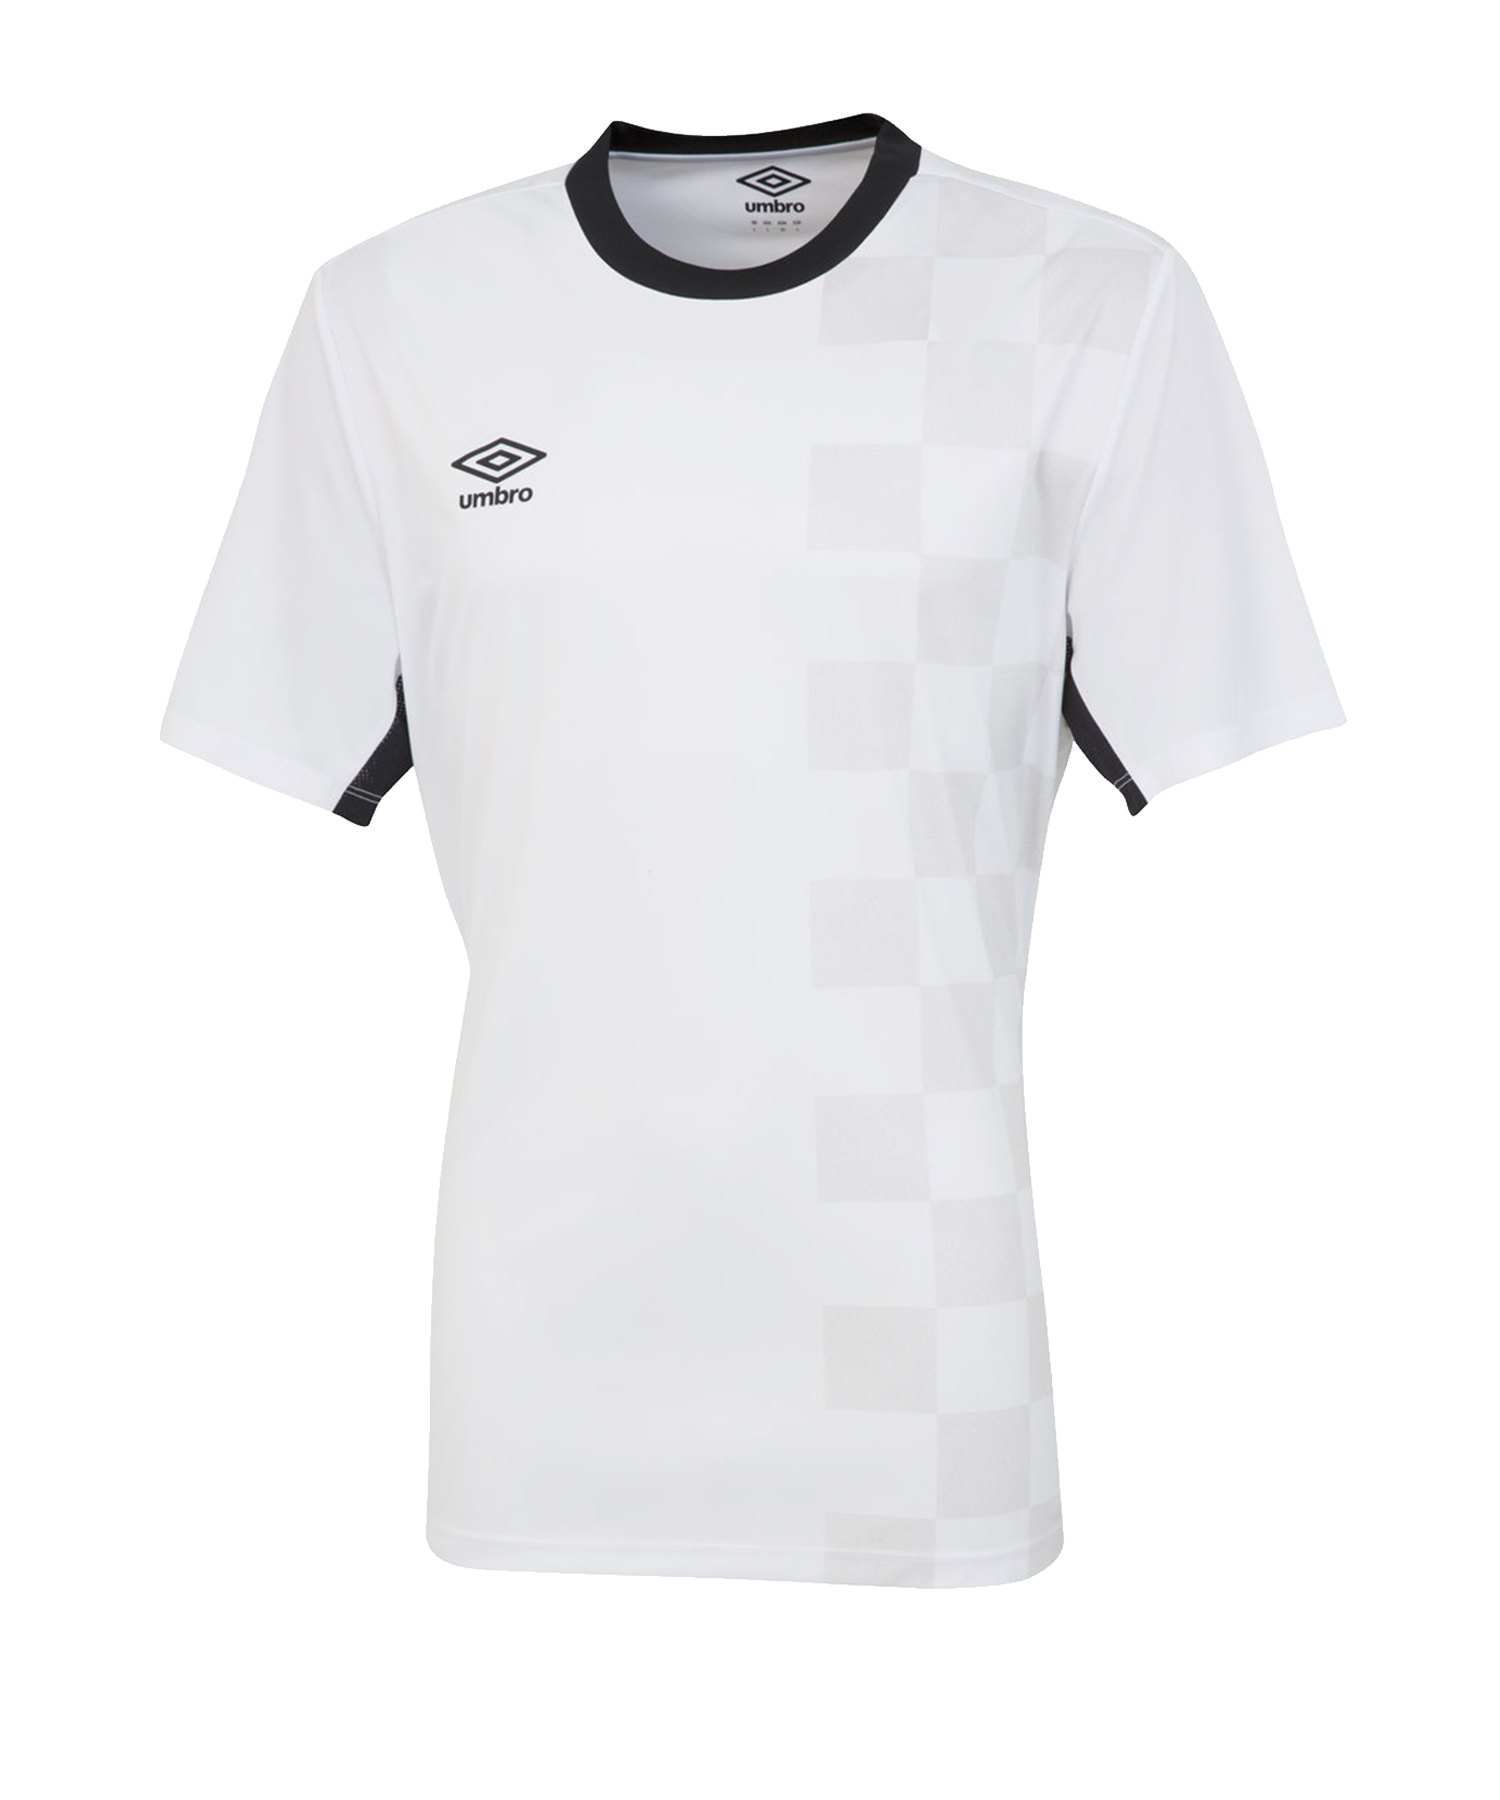 Umbro Stadion T-Shirt Weiss F096 - Weiss